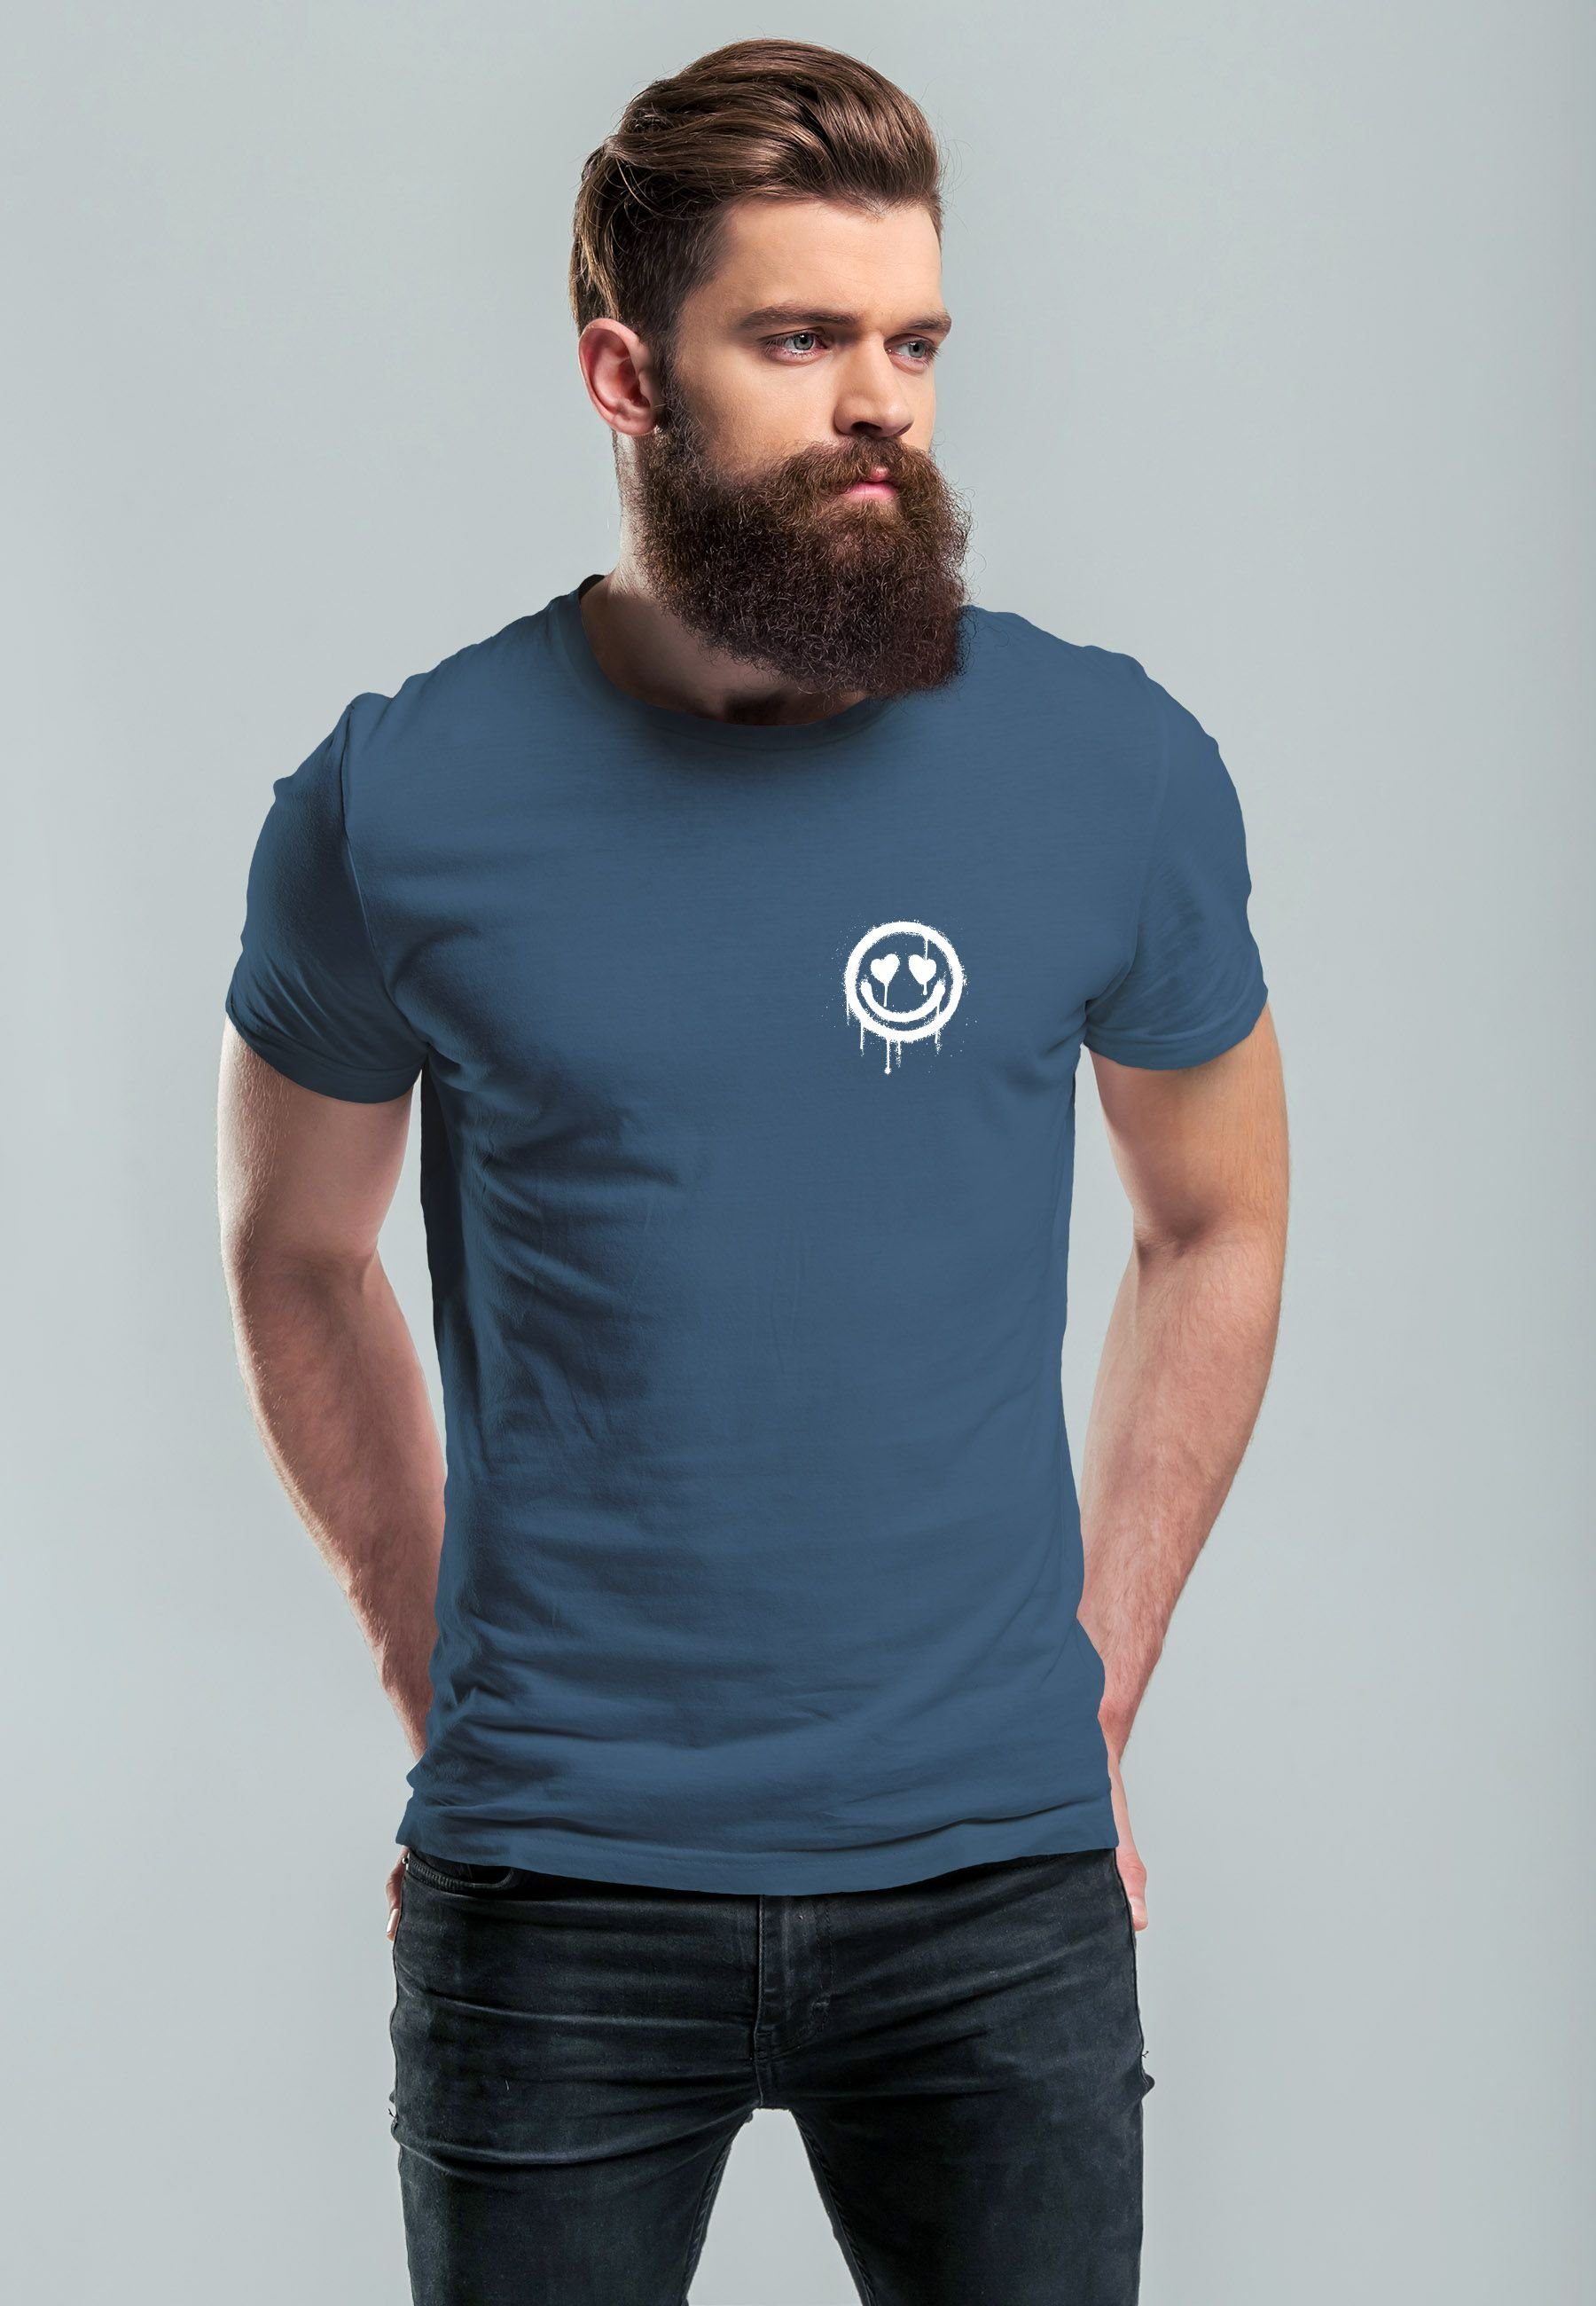 Smile Drippy Drip mit Face Aufdruck Print T-Shirt Motiv Print-Shirt Herz-Augen Neverless Herren denim Print blue